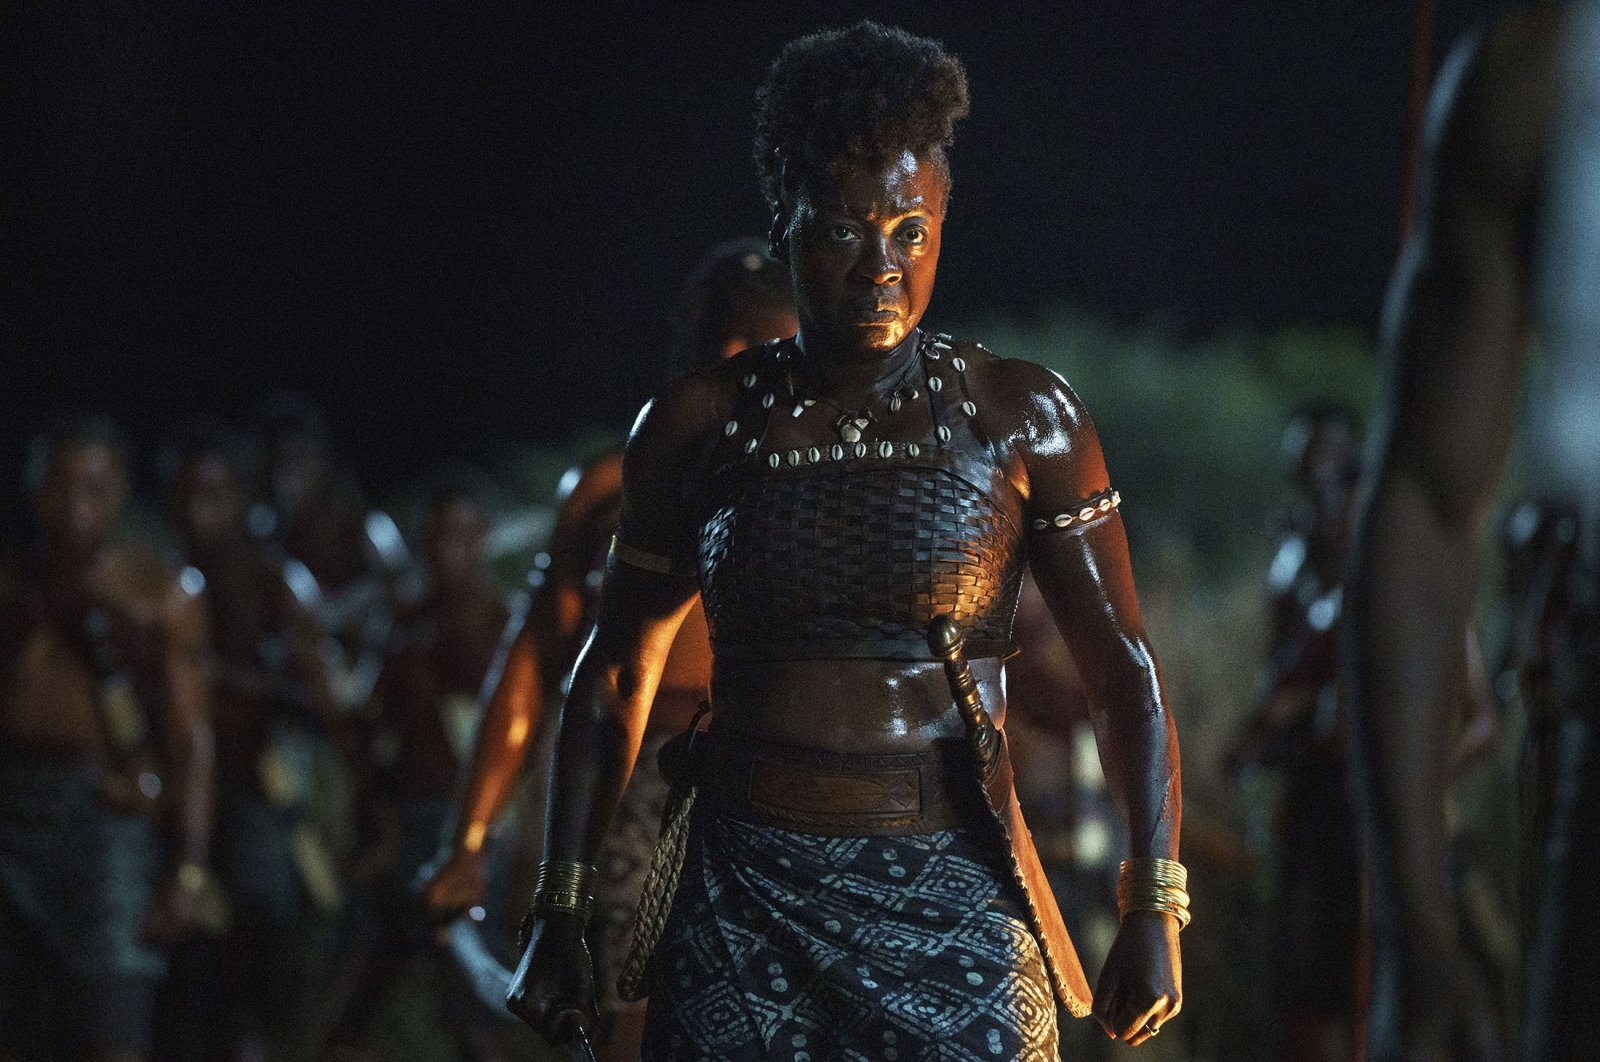 Viola Davis mempelopori pemeran kulit hitam yang kuat di ‘The Woman King’